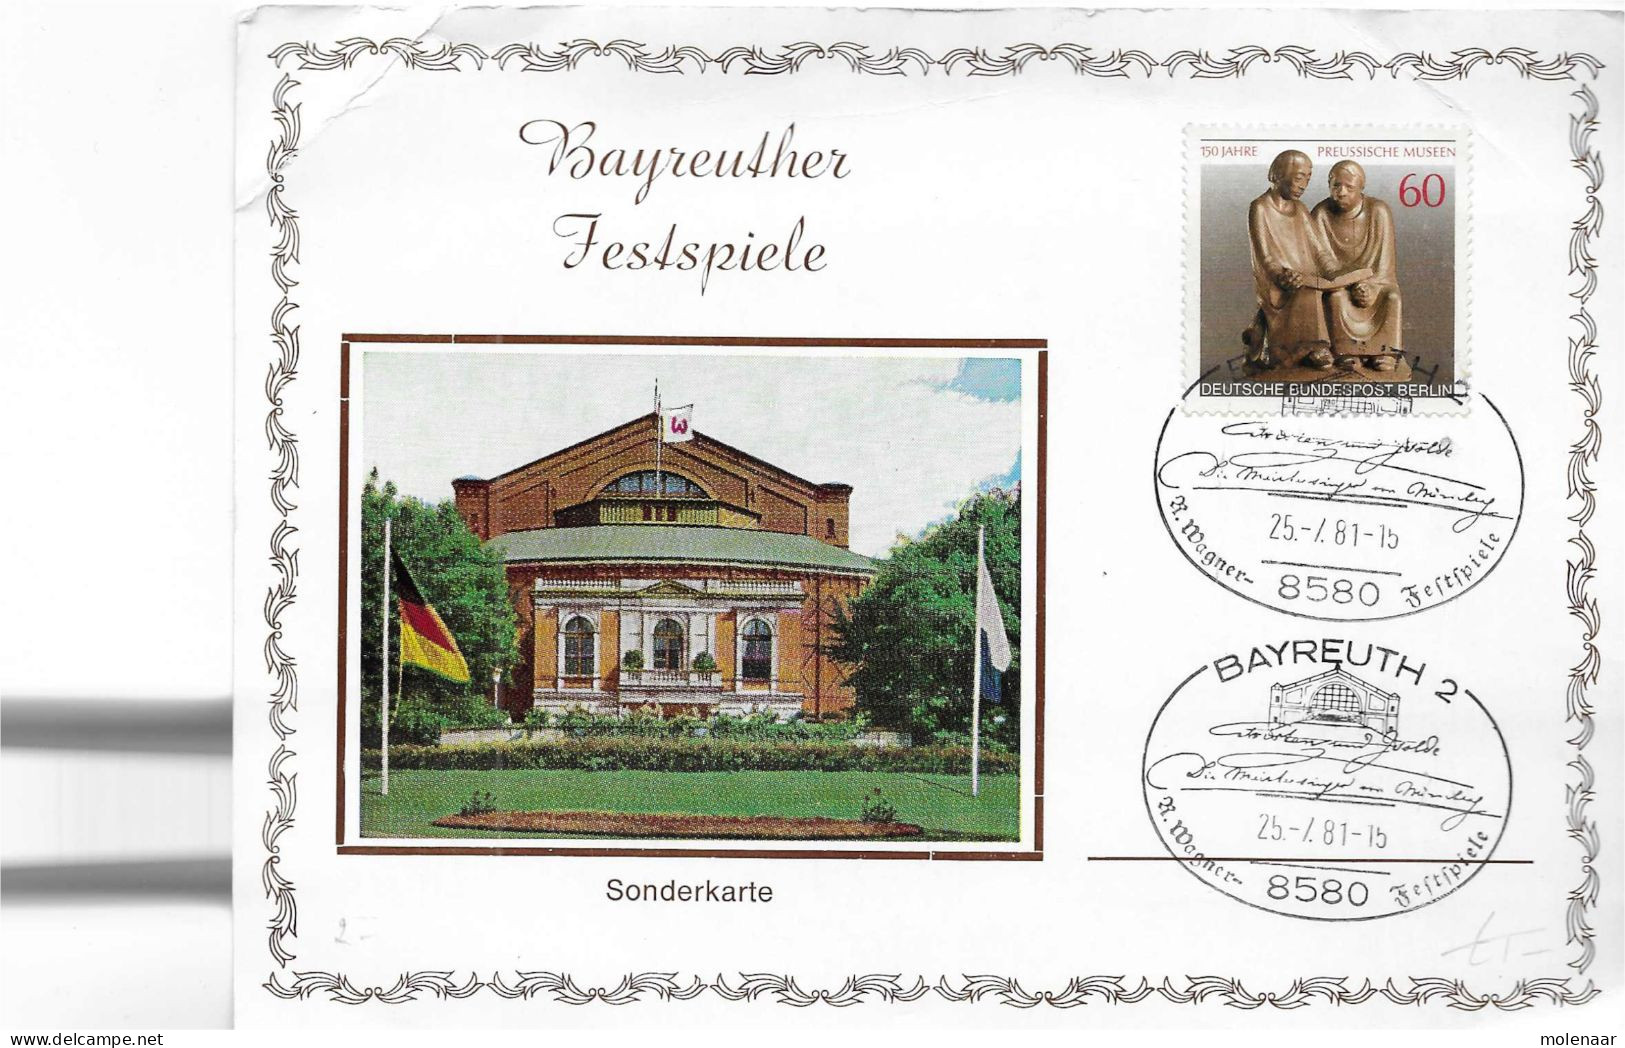 Postzegels > Europa > Duitsland > Berlijn > 1980-1990 >kaart Met No 626 (17297) - Briefe U. Dokumente